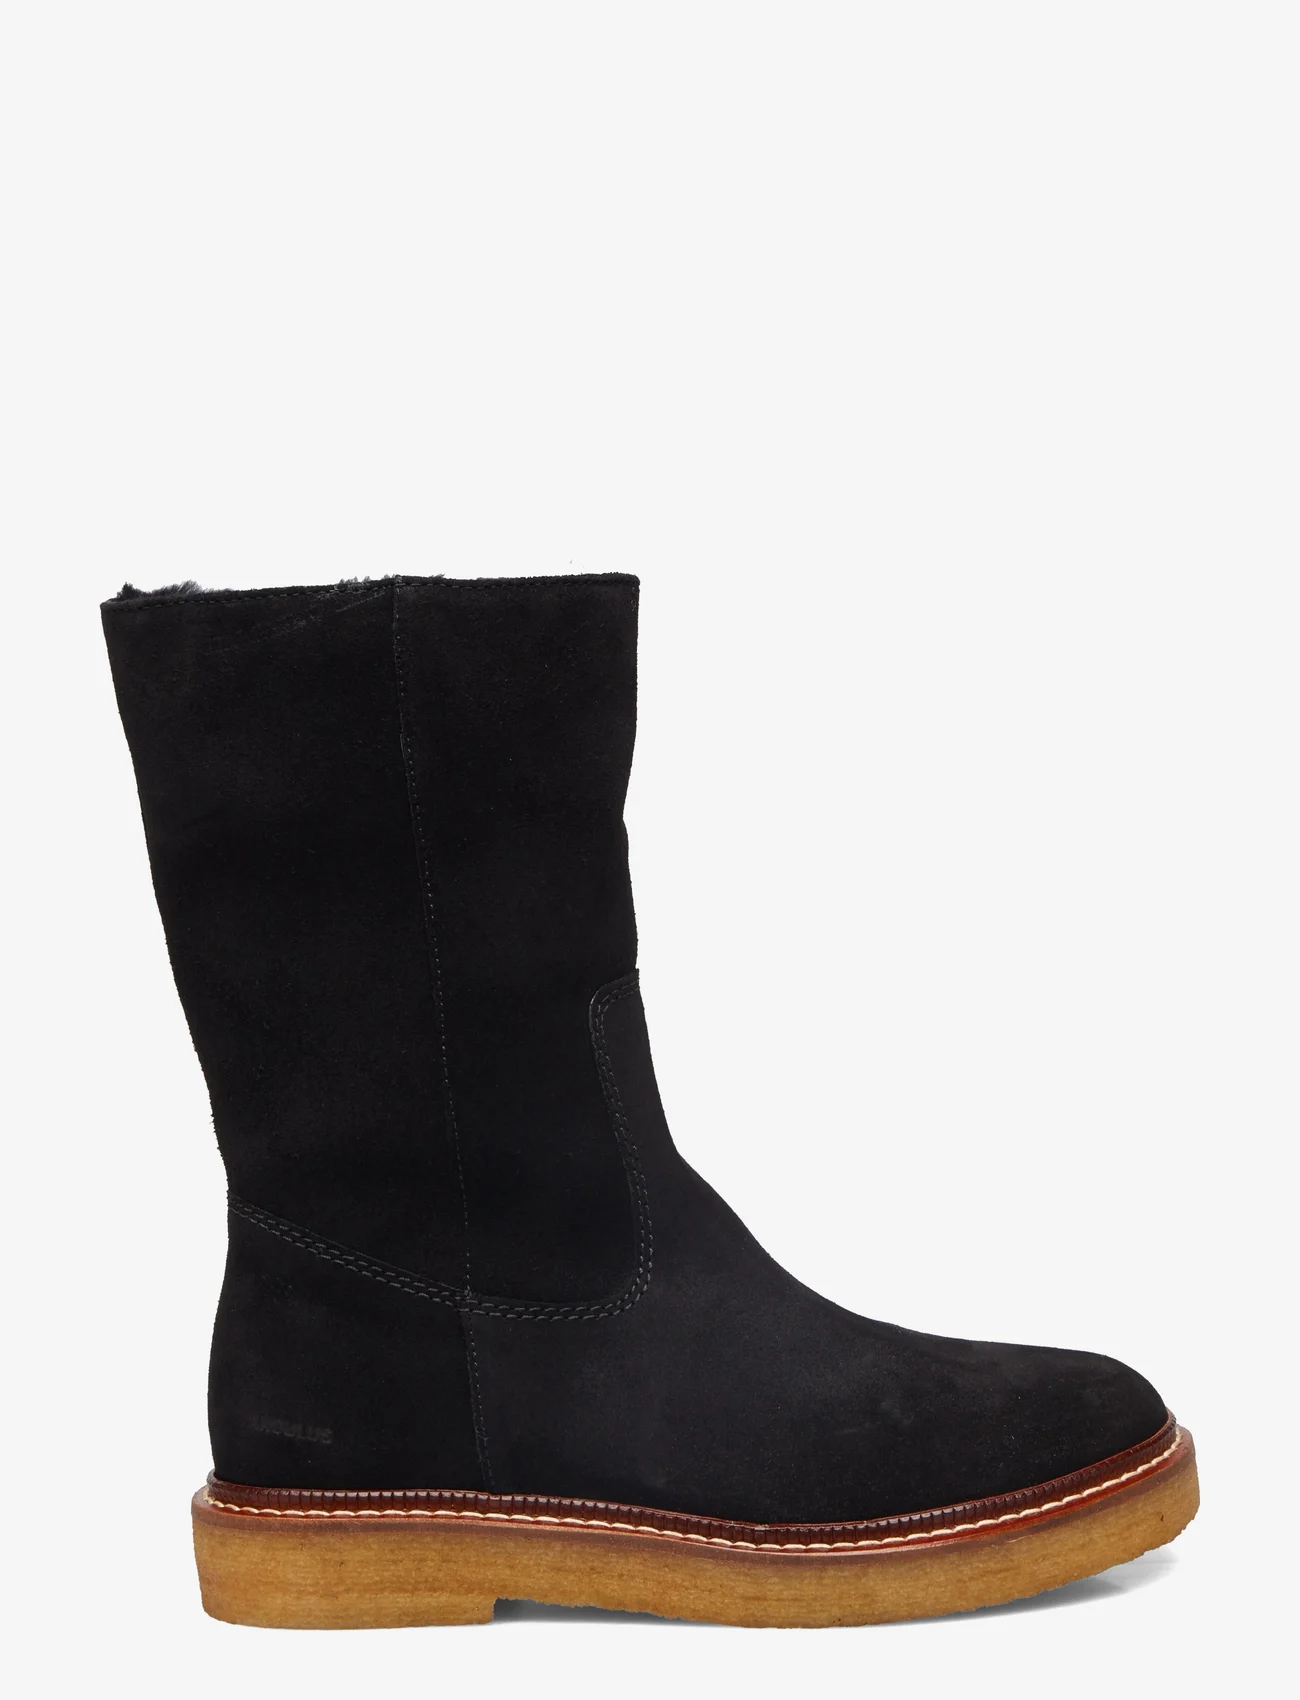 ANGULUS - Boots - flat - flat ankle boots - 1163/2014 black/black lamb woo - 1